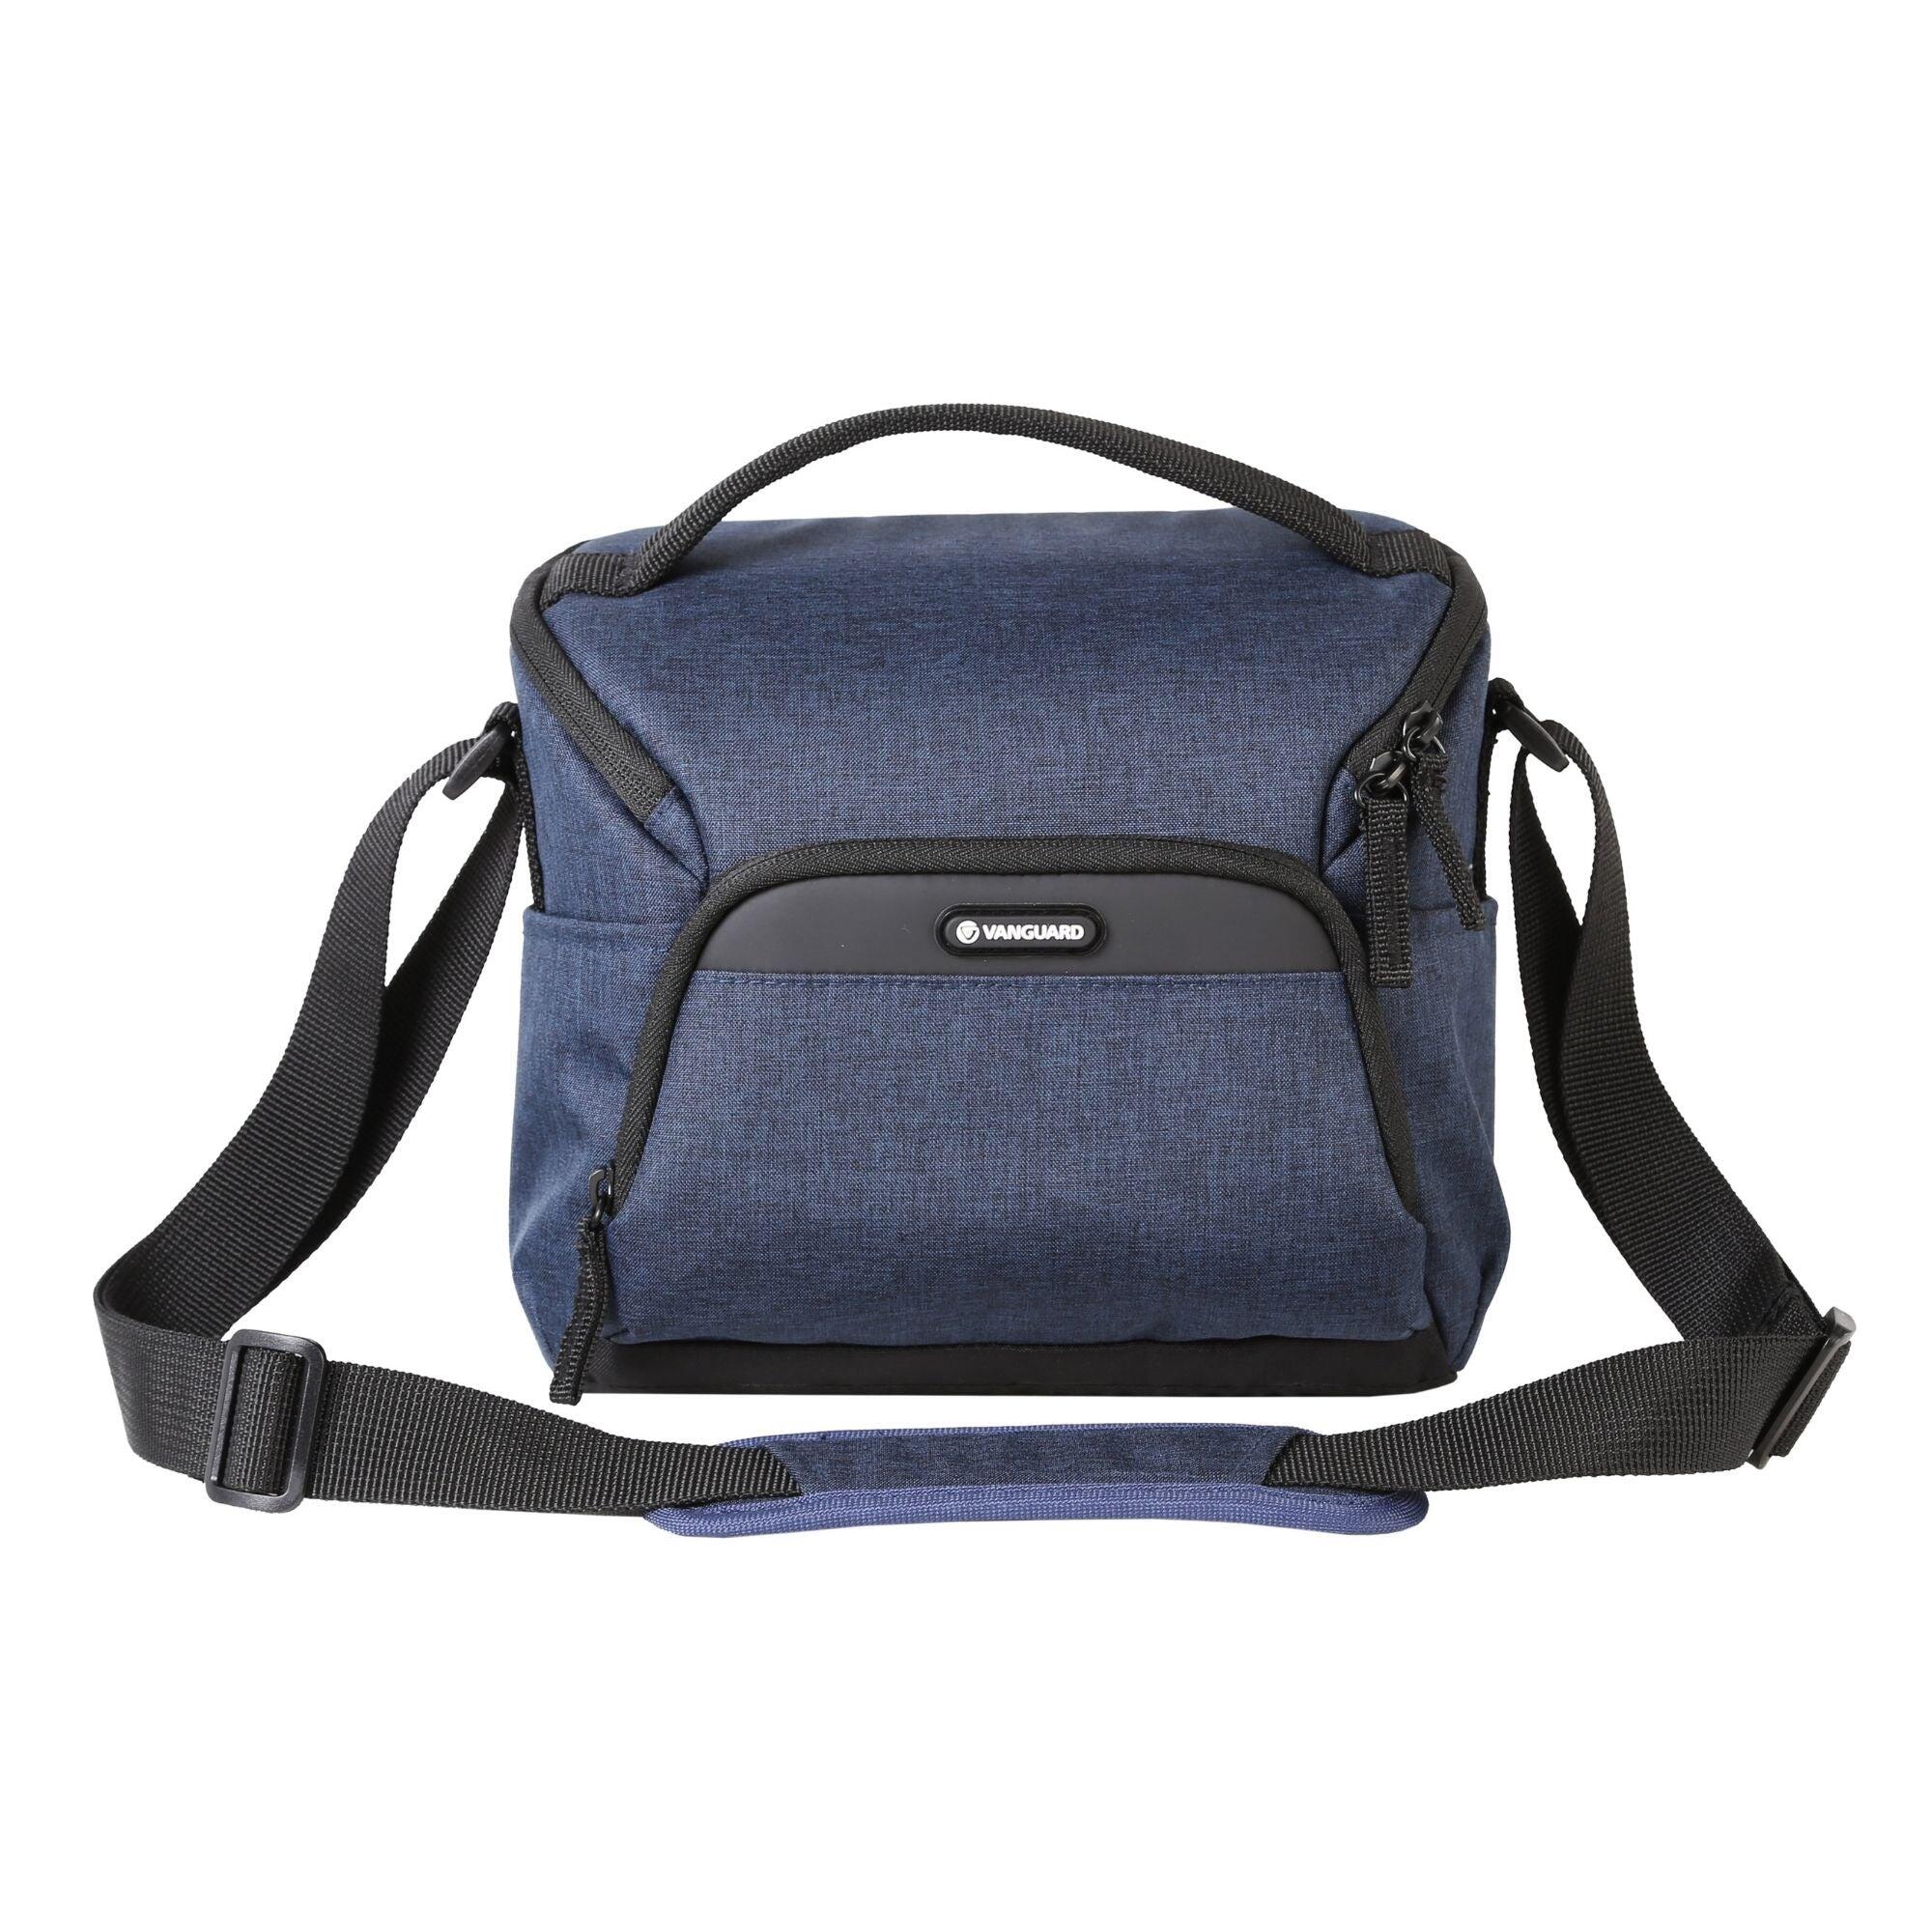 VESTA Aspire 21 NV Shoulder Bag - Blue 4/5